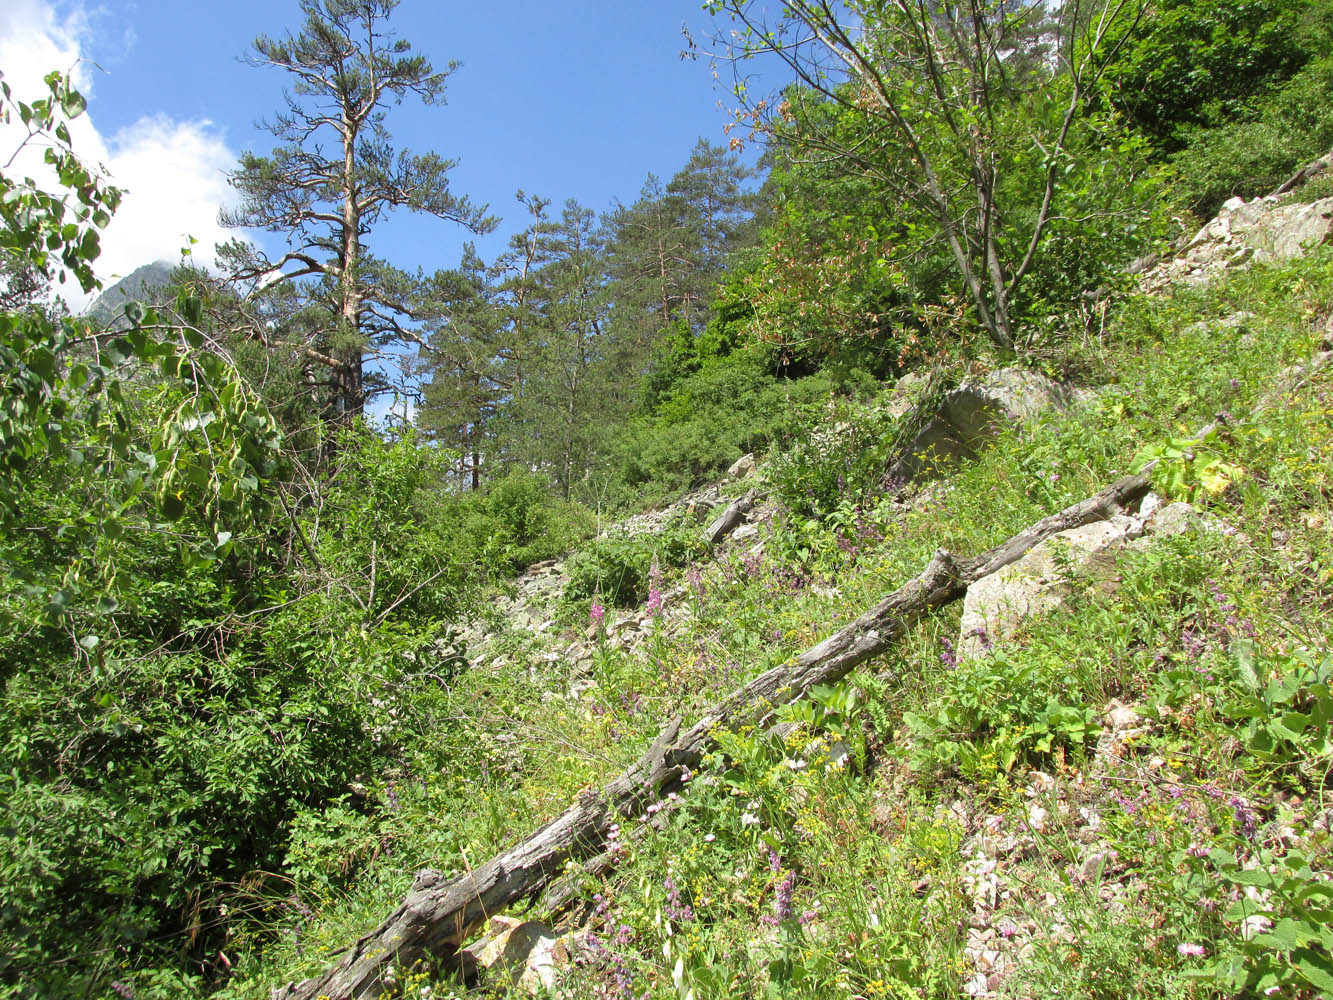 Цейское ущелье (средняя часть), изображение ландшафта.